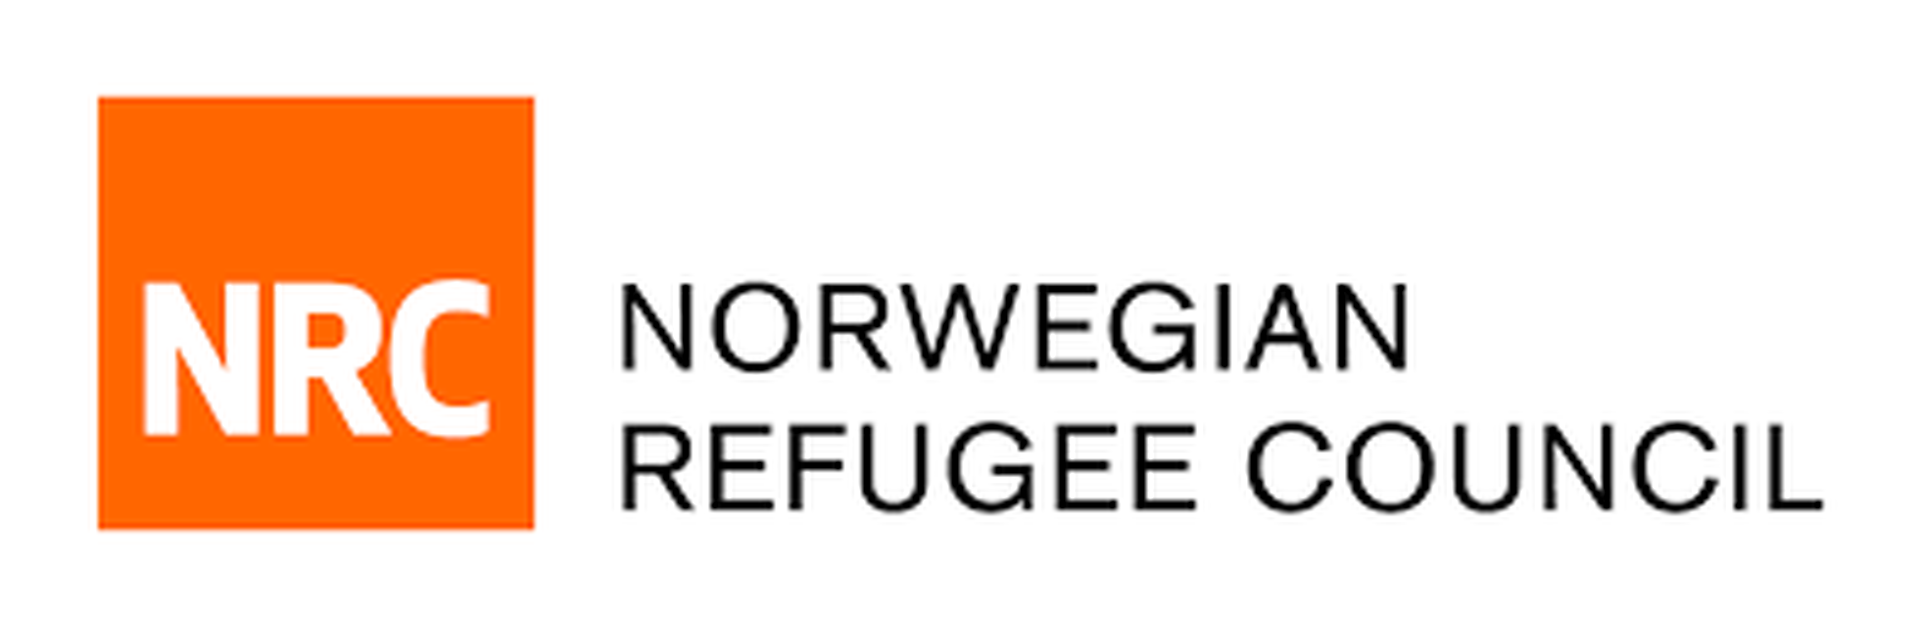 NRC-logo_result.png